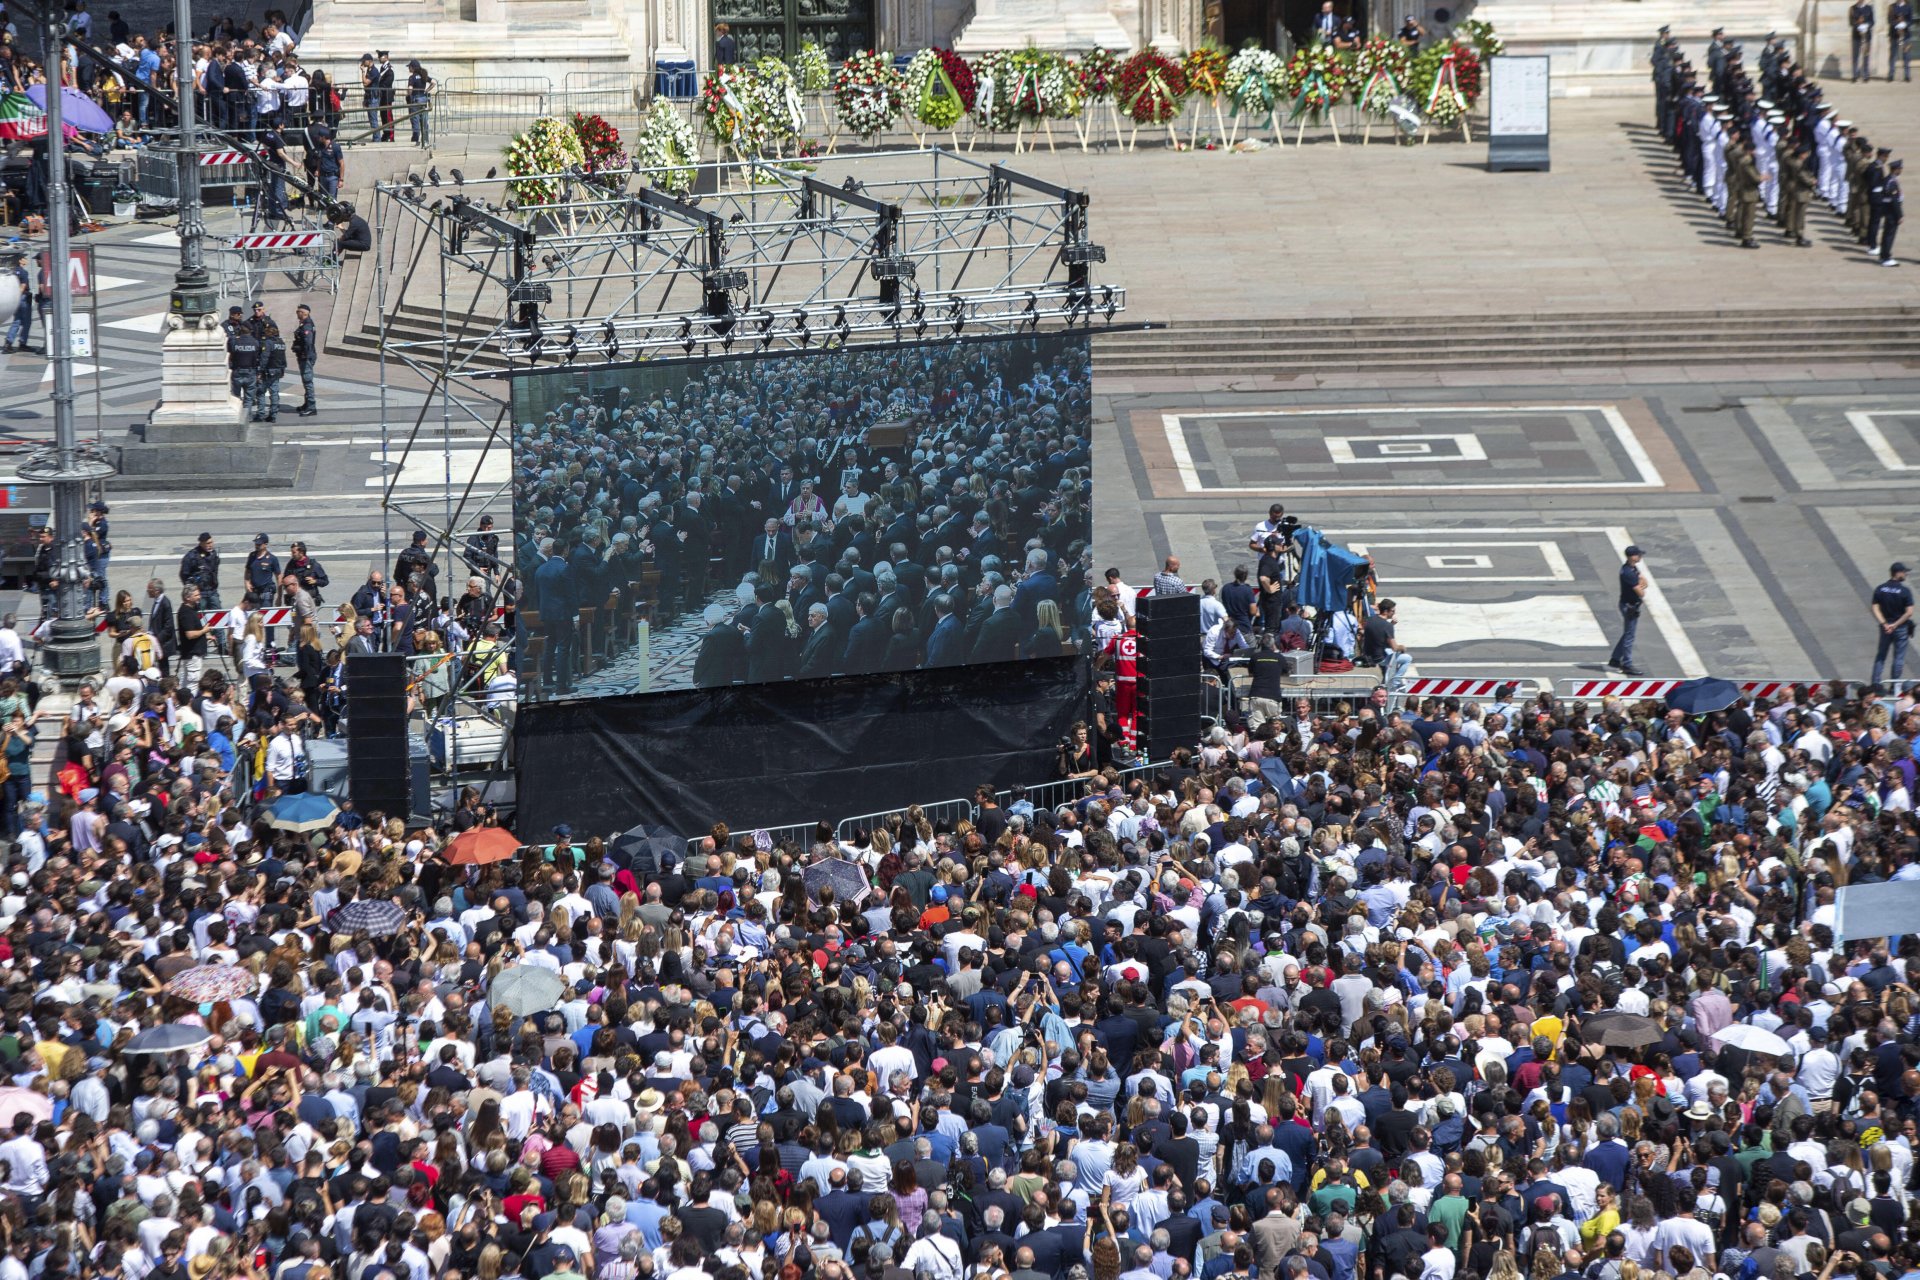 два гигантски екрана позволяваха на хората да следят погребението от площада